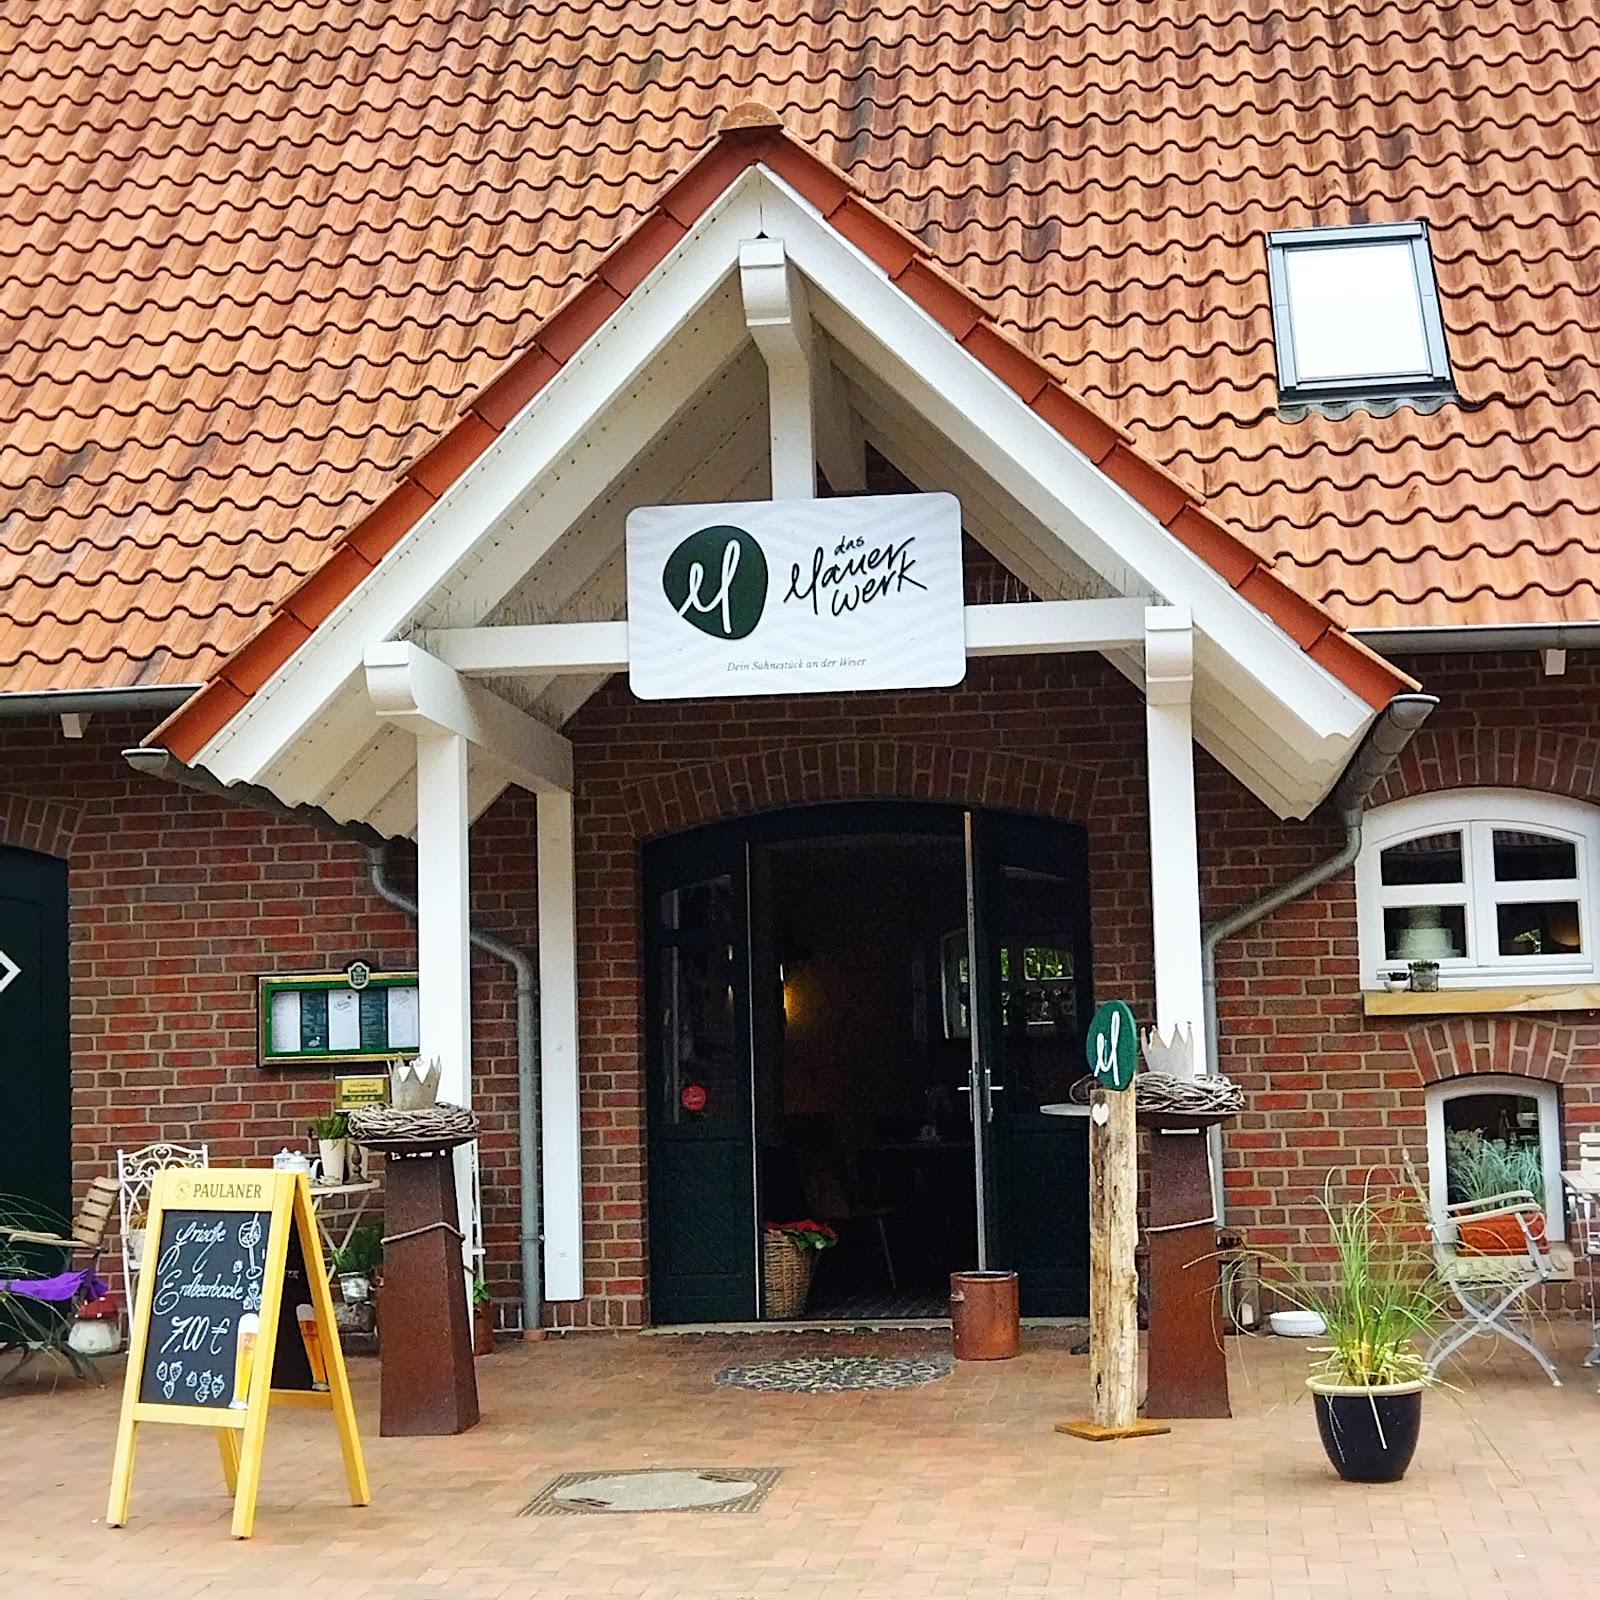 Restaurant "das Mauerwerk" in Bad Oeynhausen